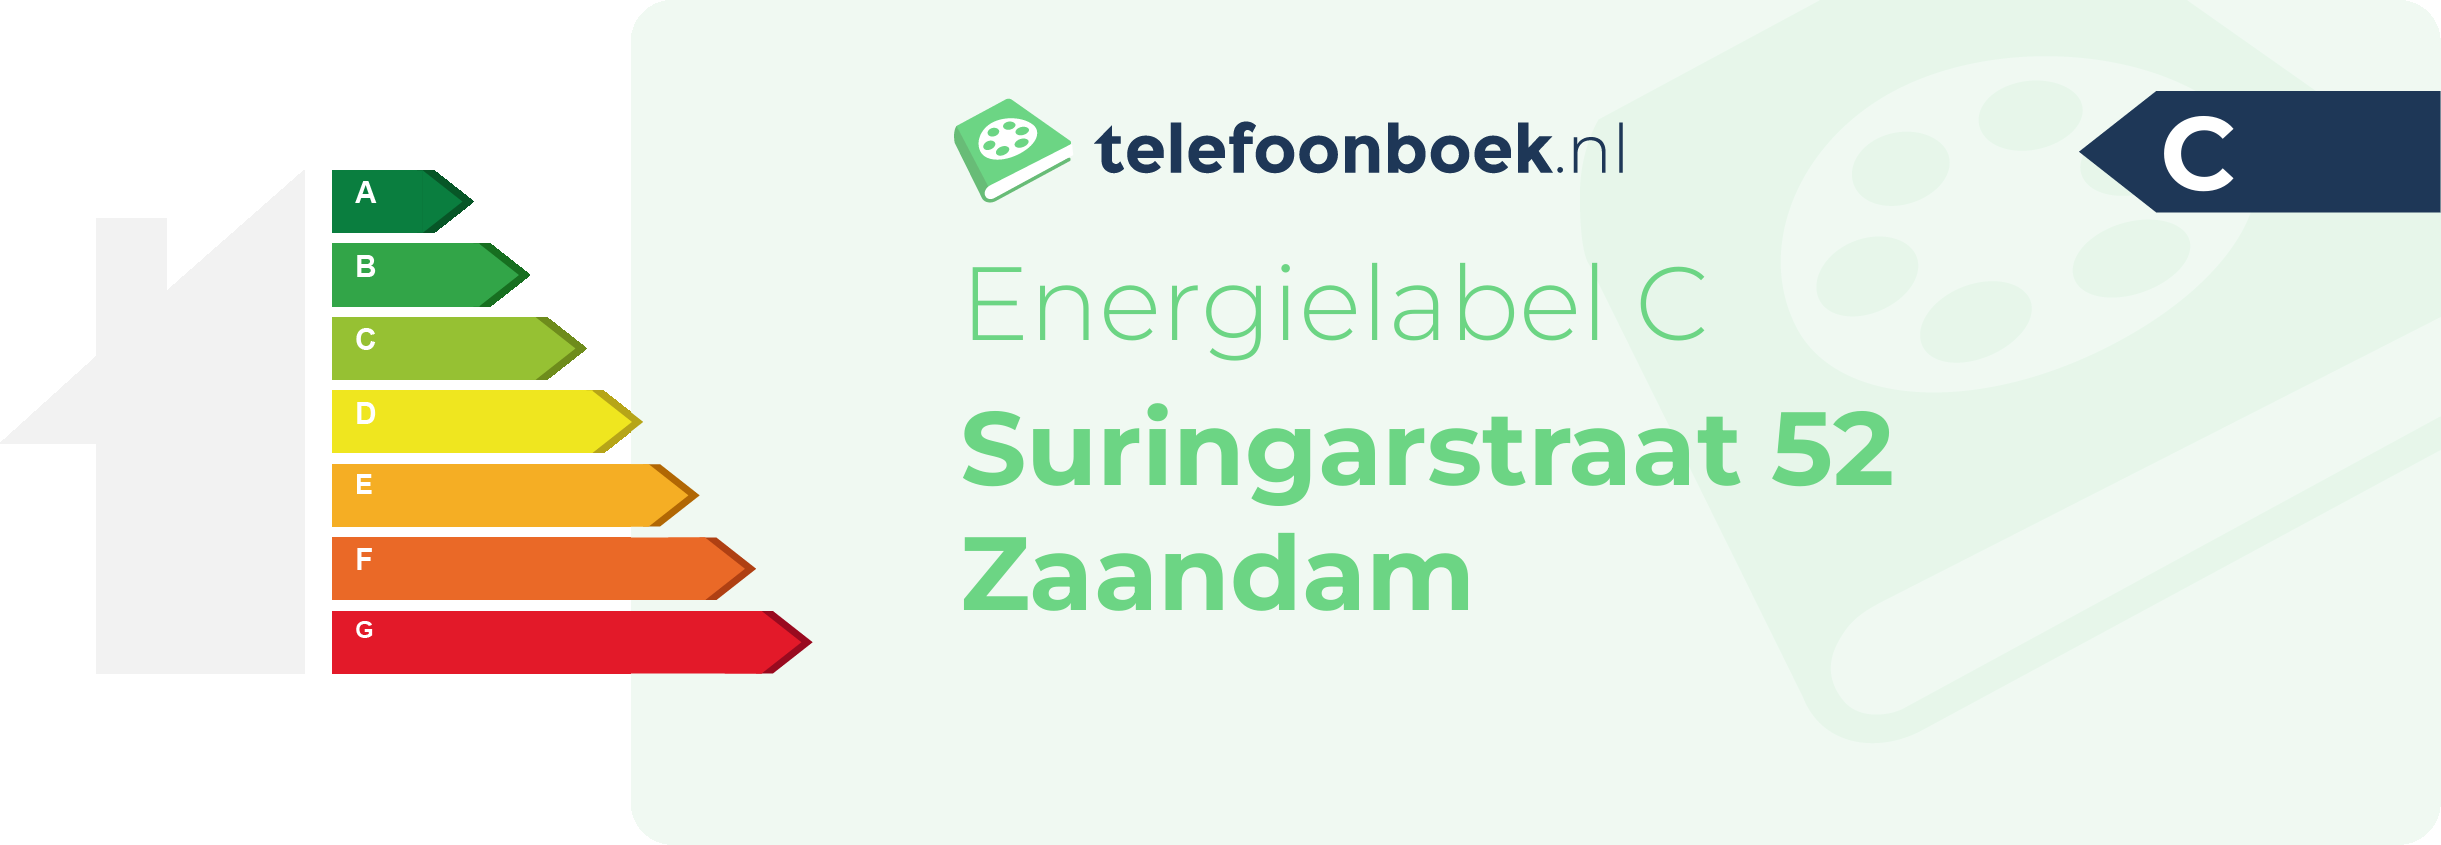 Energielabel Suringarstraat 52 Zaandam